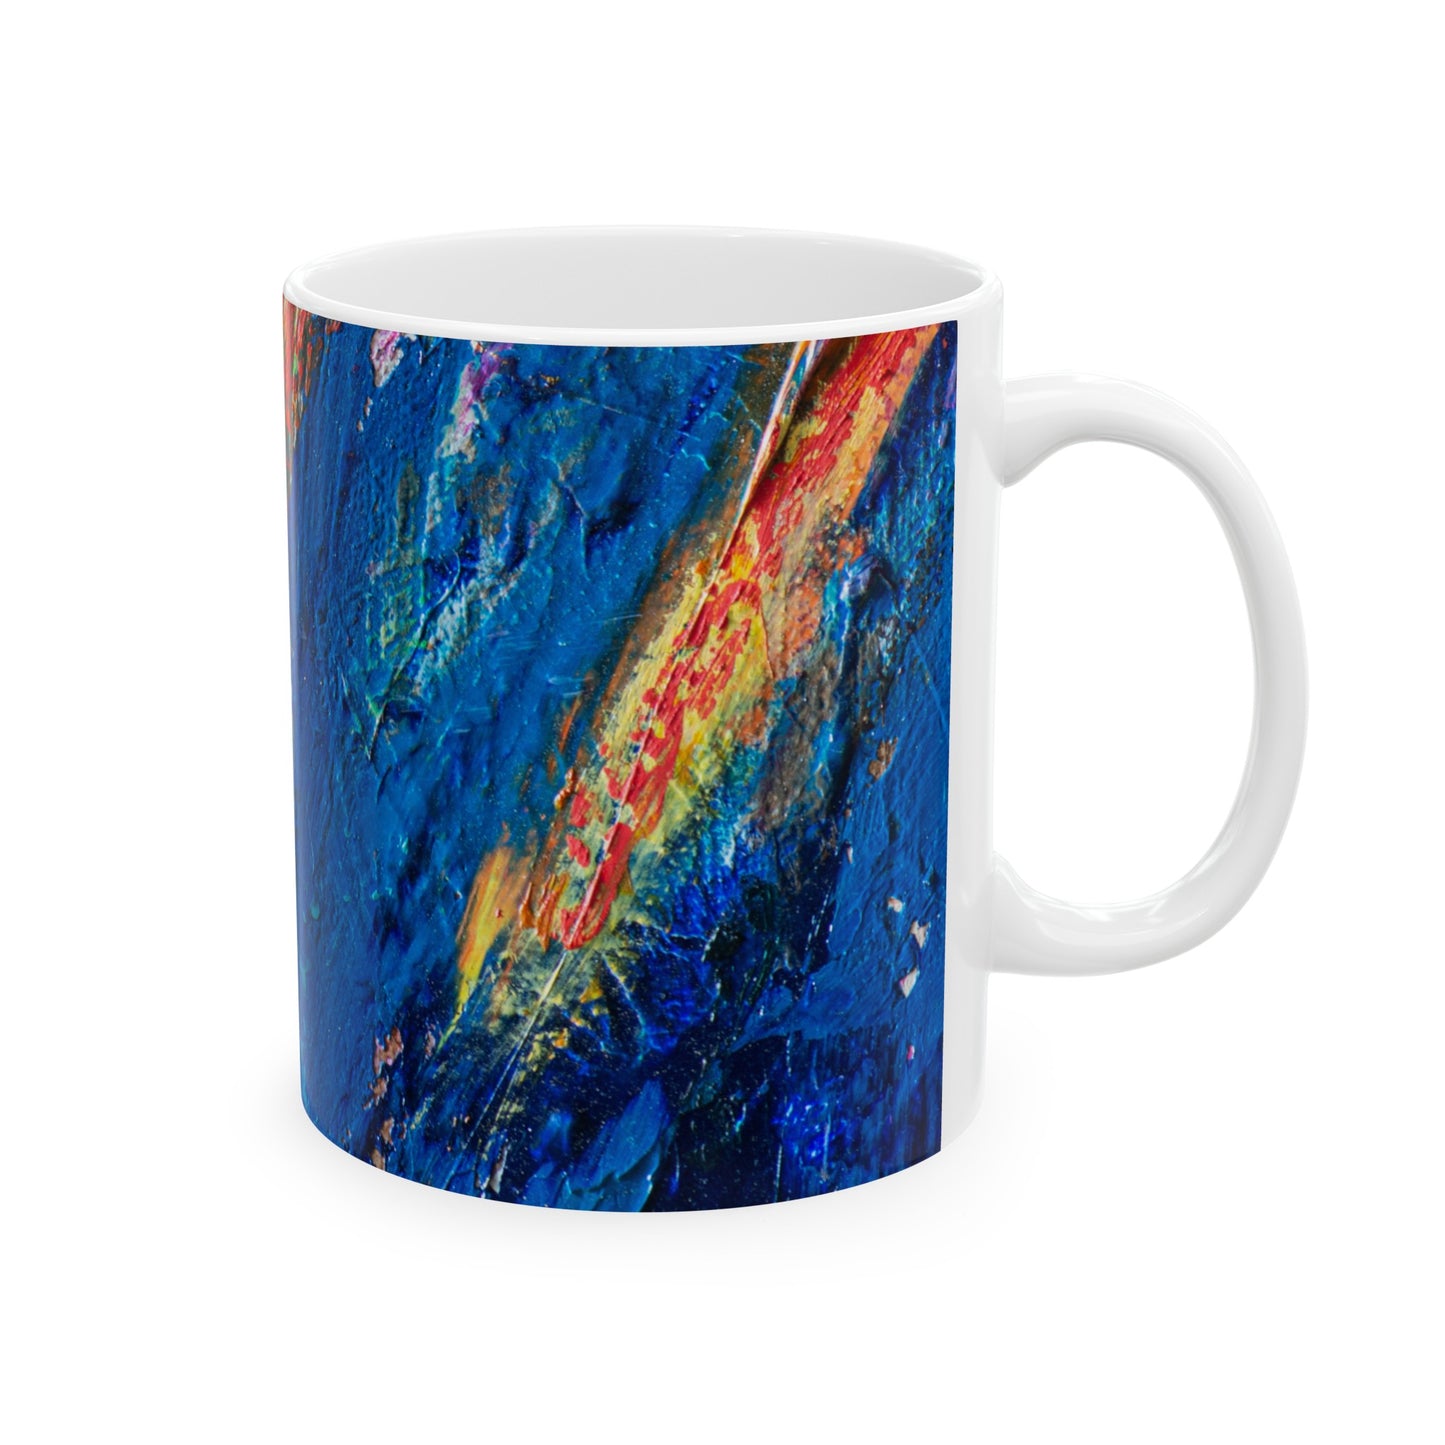 Whimsical Wonders - The Alien Ceramic Mug 11oz